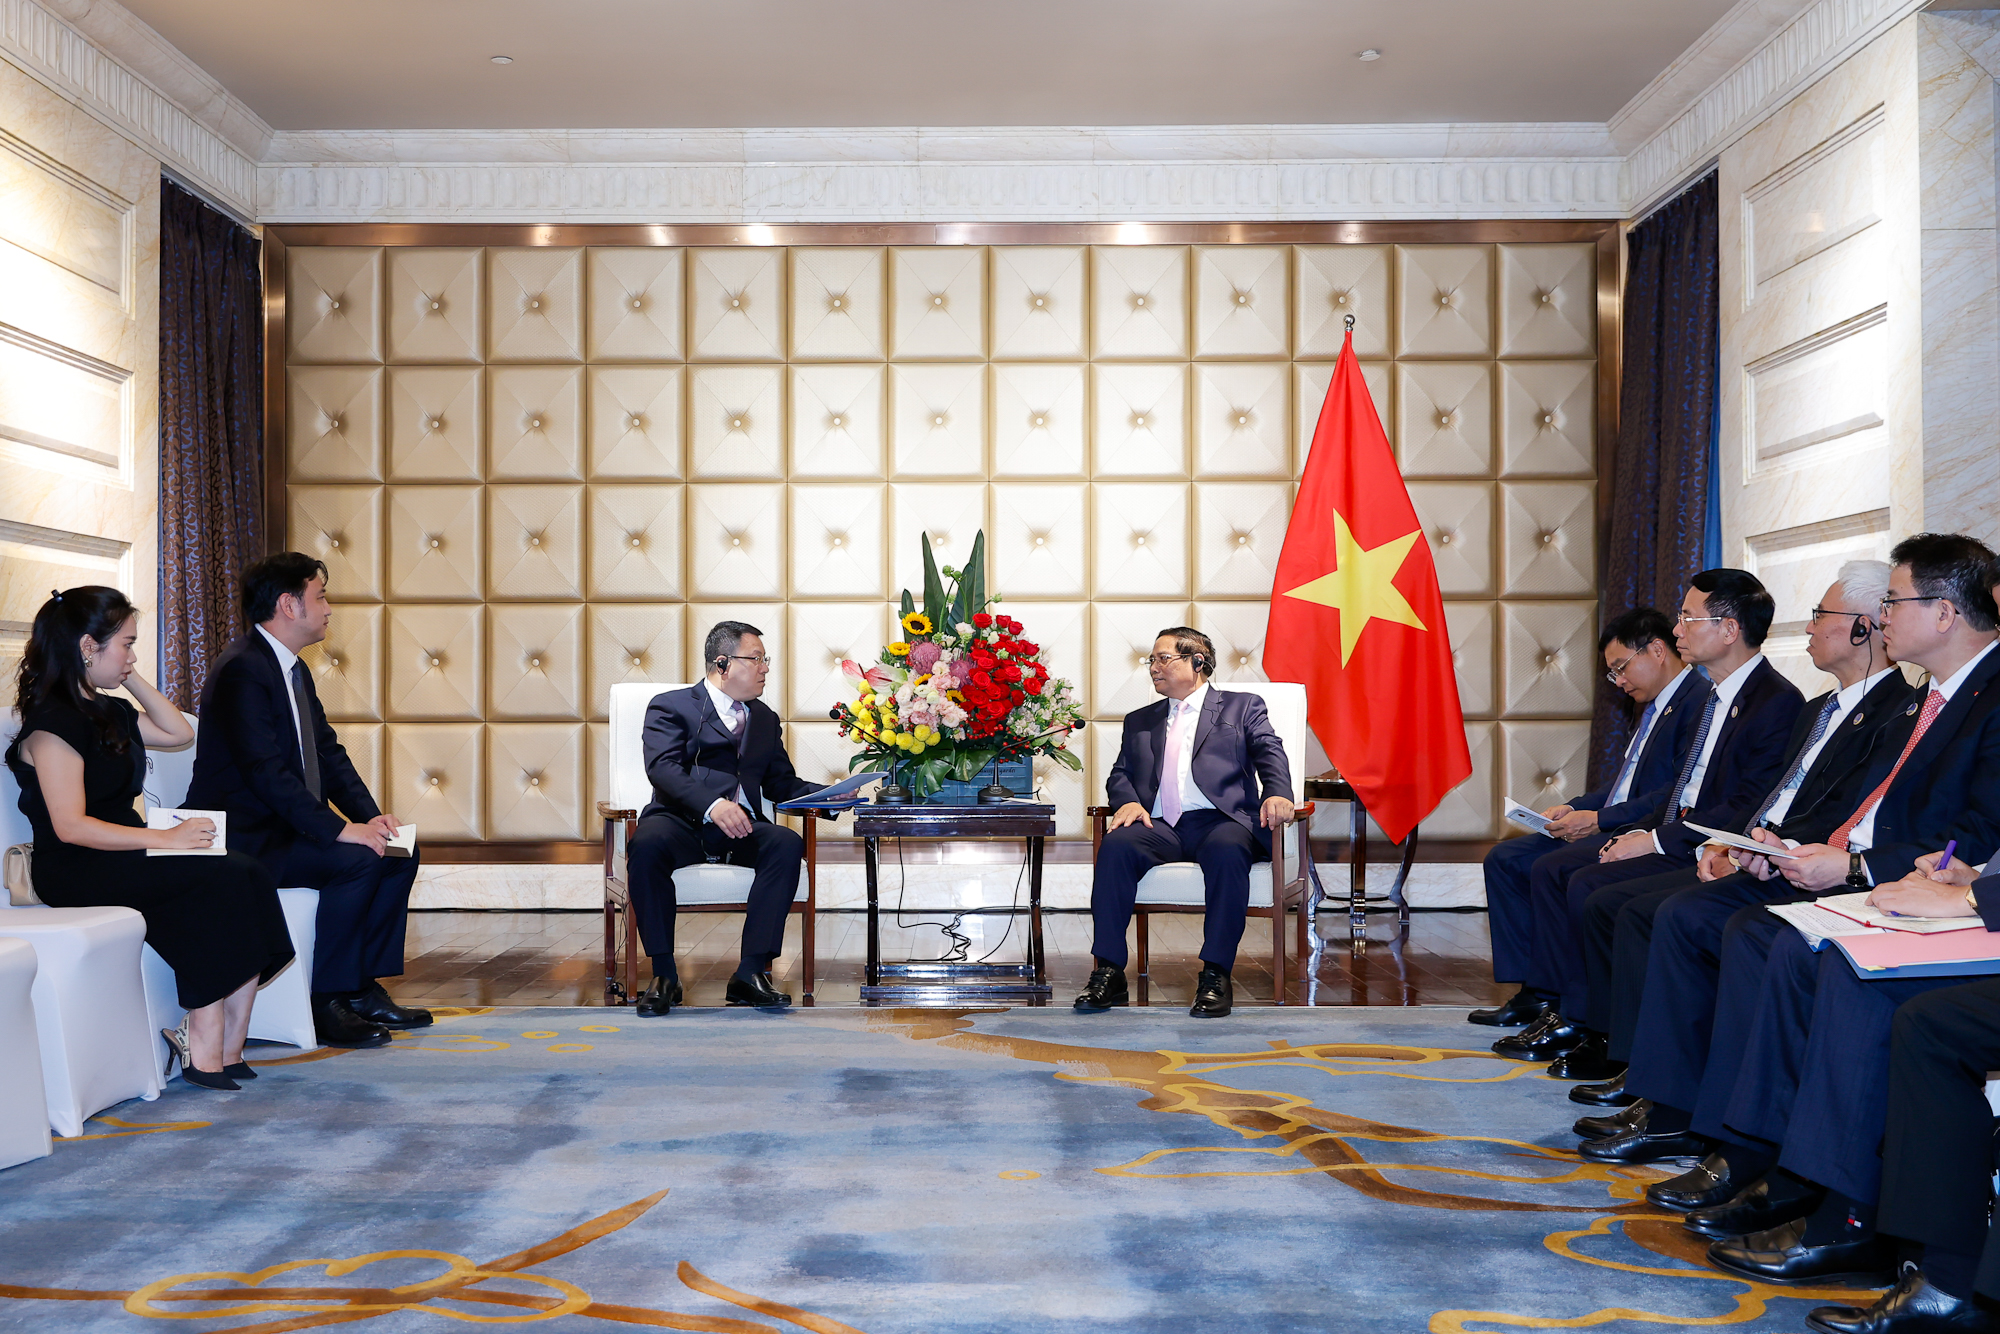 Thủ tướng Phạm Minh Chính đánh giá cao những kết quả hoạt động và hoan nghênh kế hoạch mở rộng đầu tư, kinh doanh tại Việt Nam của PowerChina trong lĩnh vực năng lượng và cơ sở hạ tầng - Ảnh: VGP/Nhật Bắc